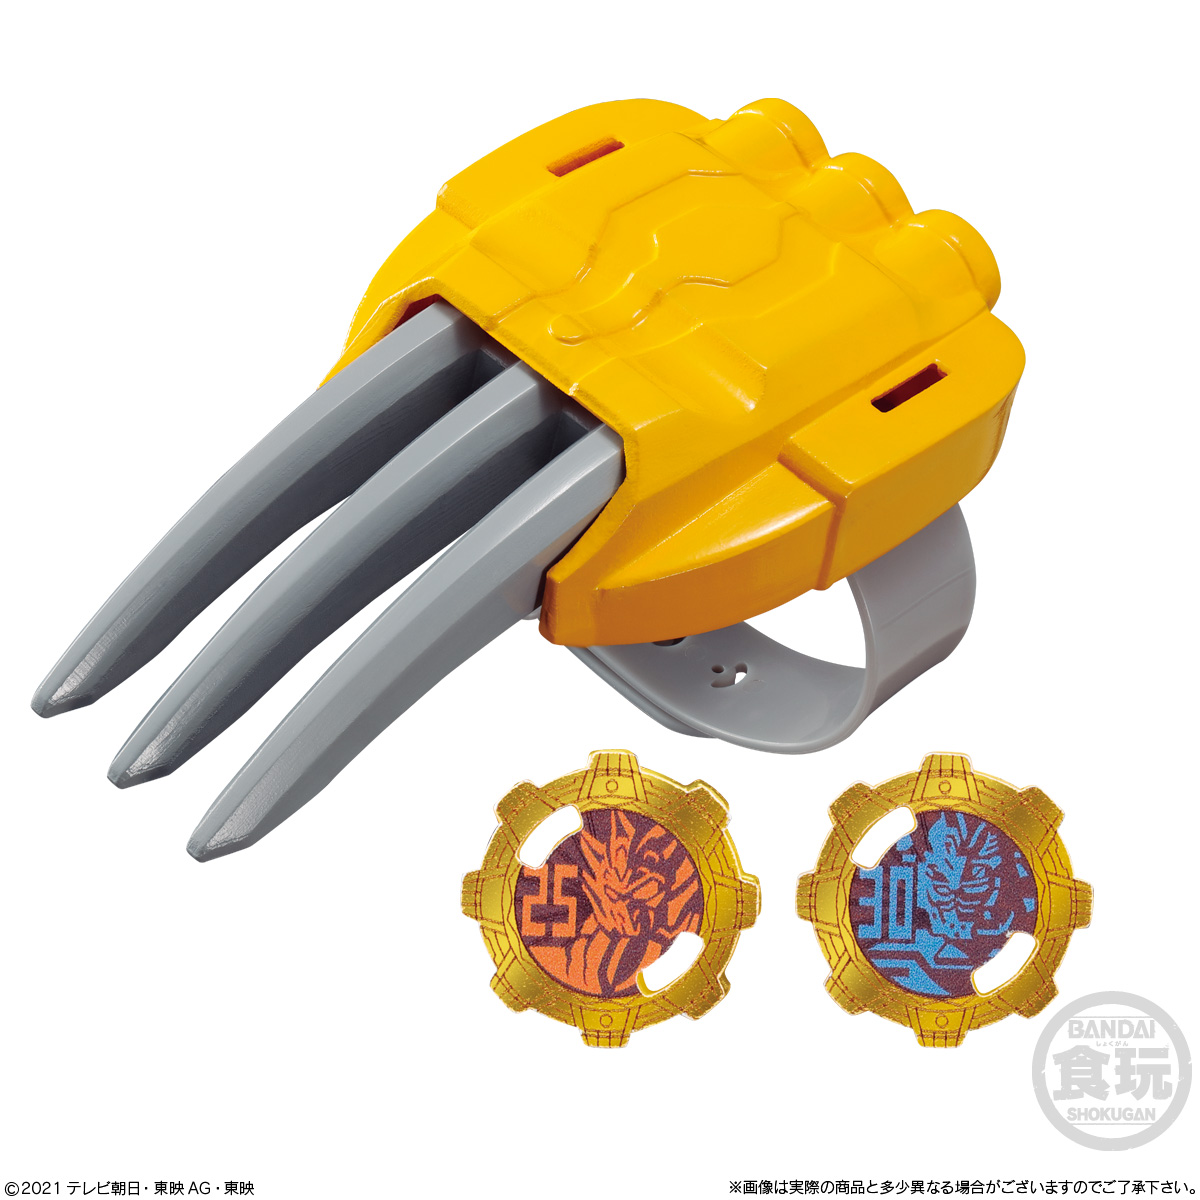 【食玩】ミニプラ なりきりシリーズ『ゼンカイジャーごっこ』機界戦隊ゼンカイジャー 10個入りBOX-004